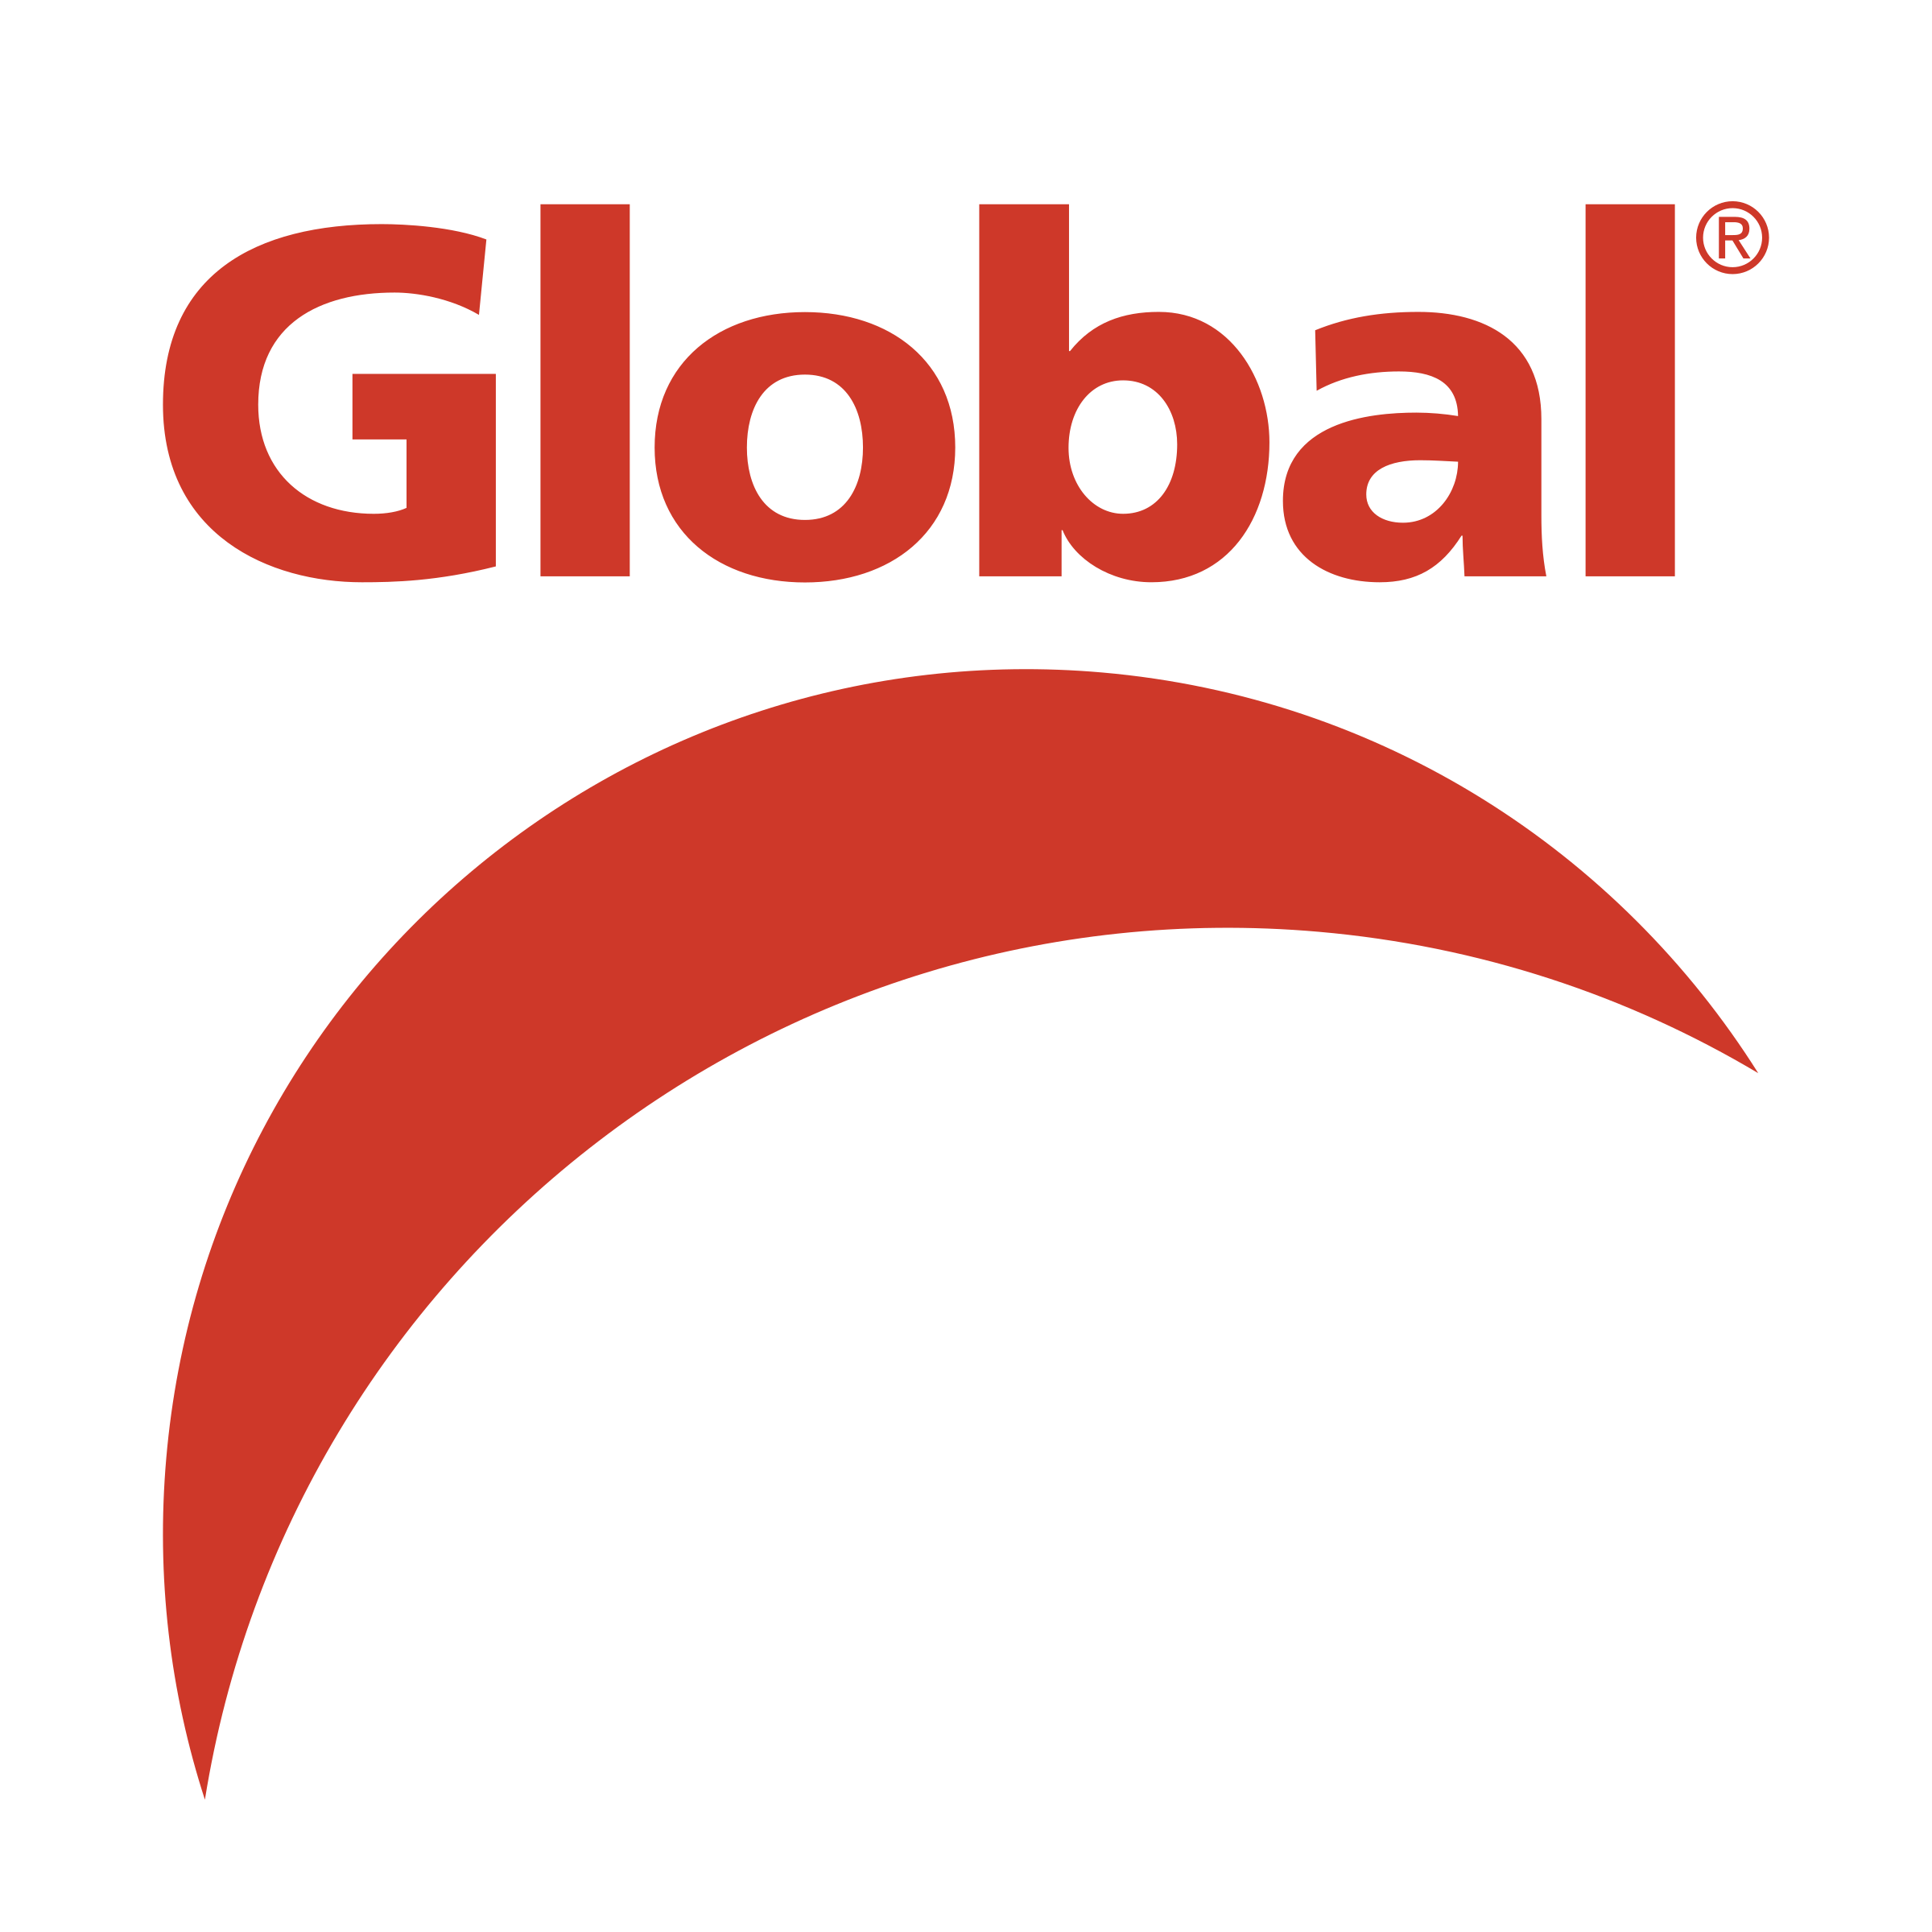 Global TV Logo - Global Television Network Logo PNG Transparent & SVG Vector ...